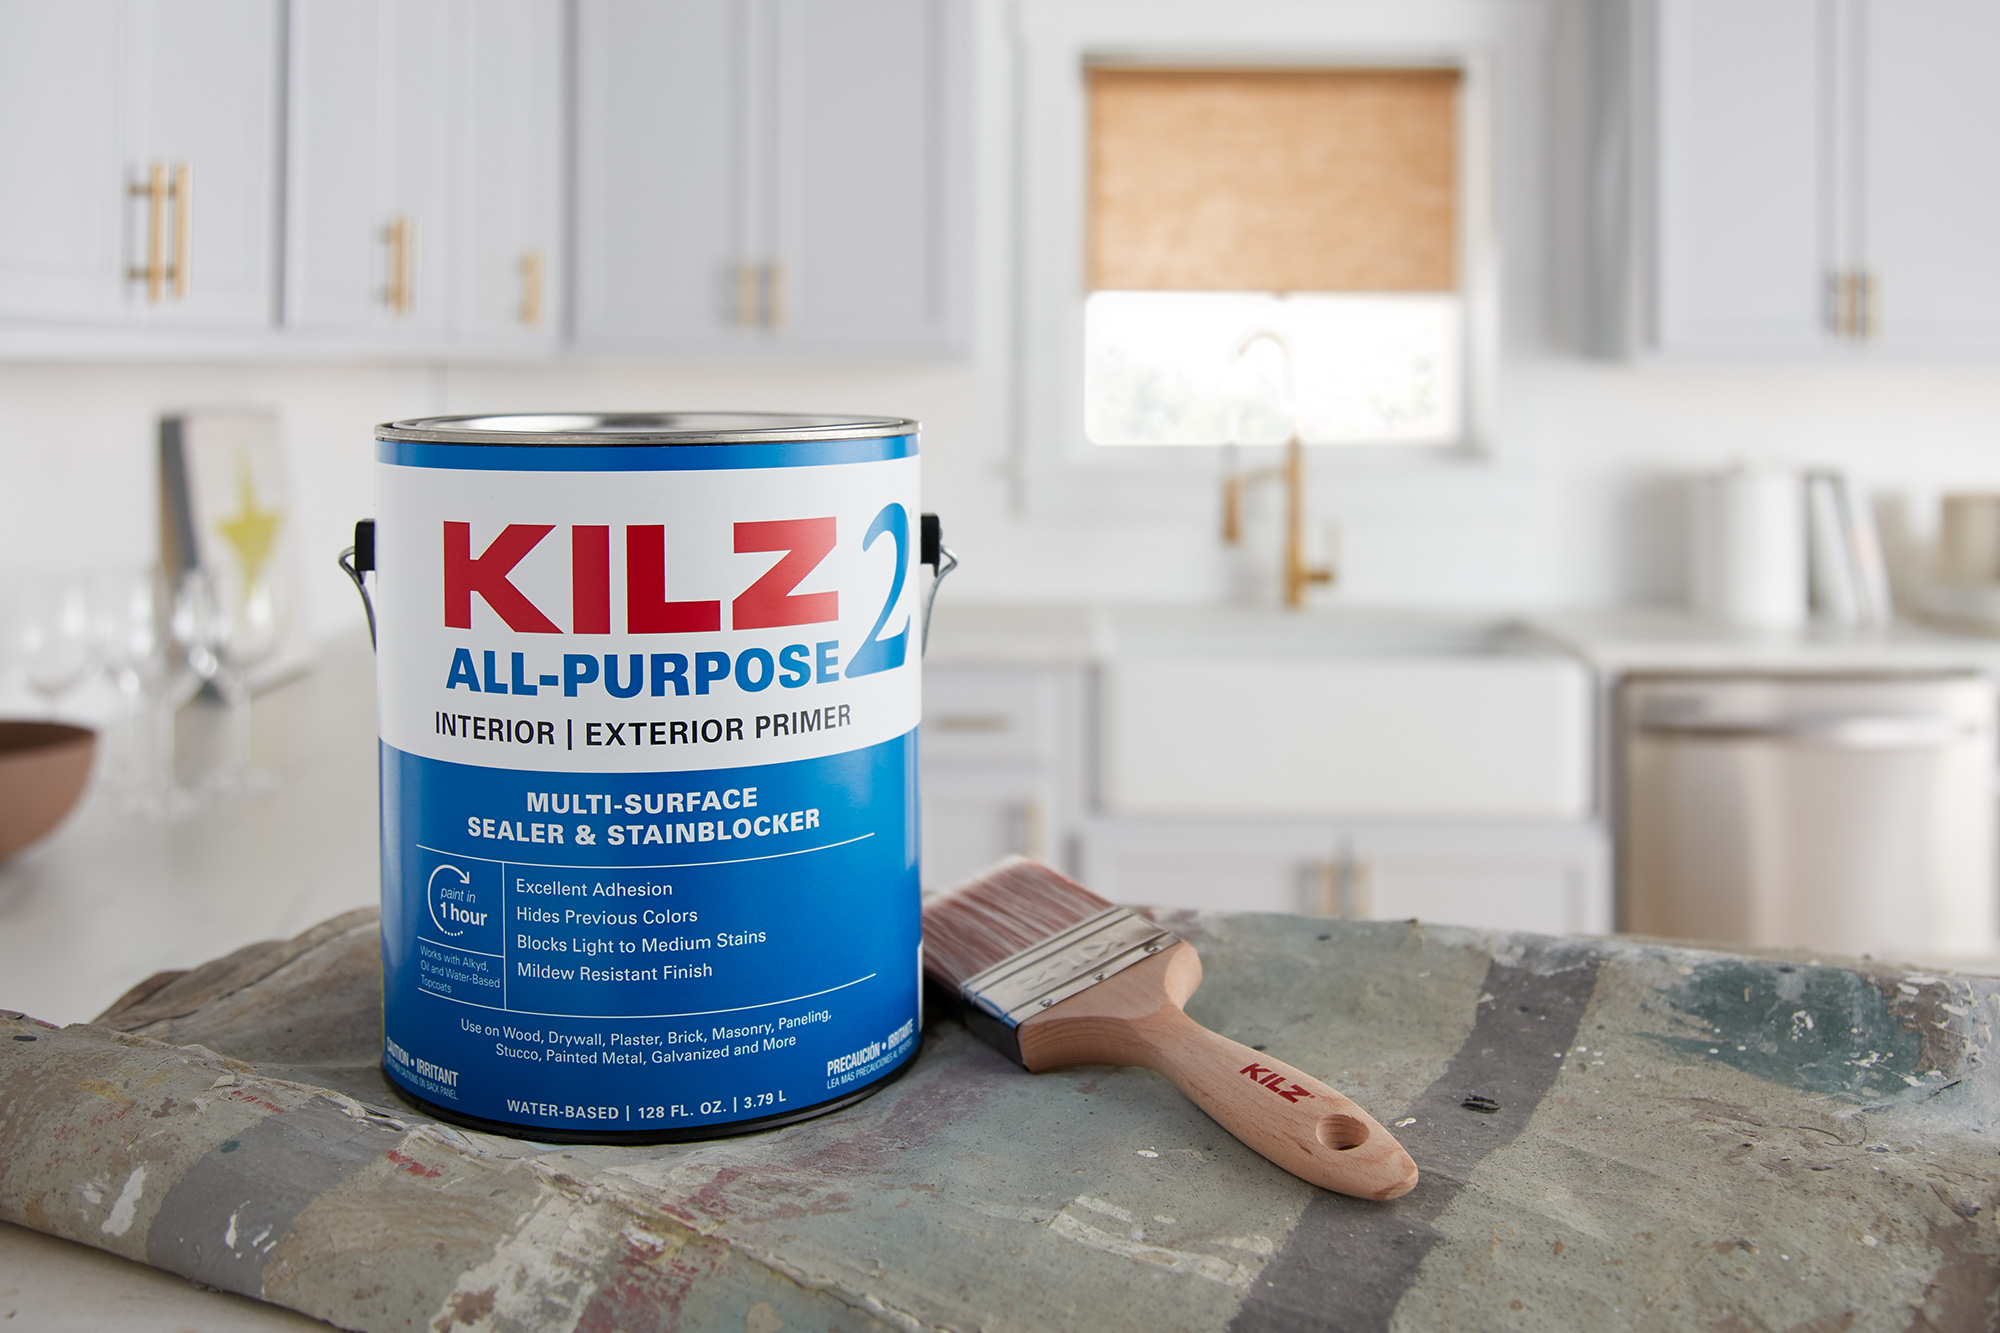 KILZ 2 All Purpose Interior/Exterior Primer 1 Gallon can in a kitchen setting.